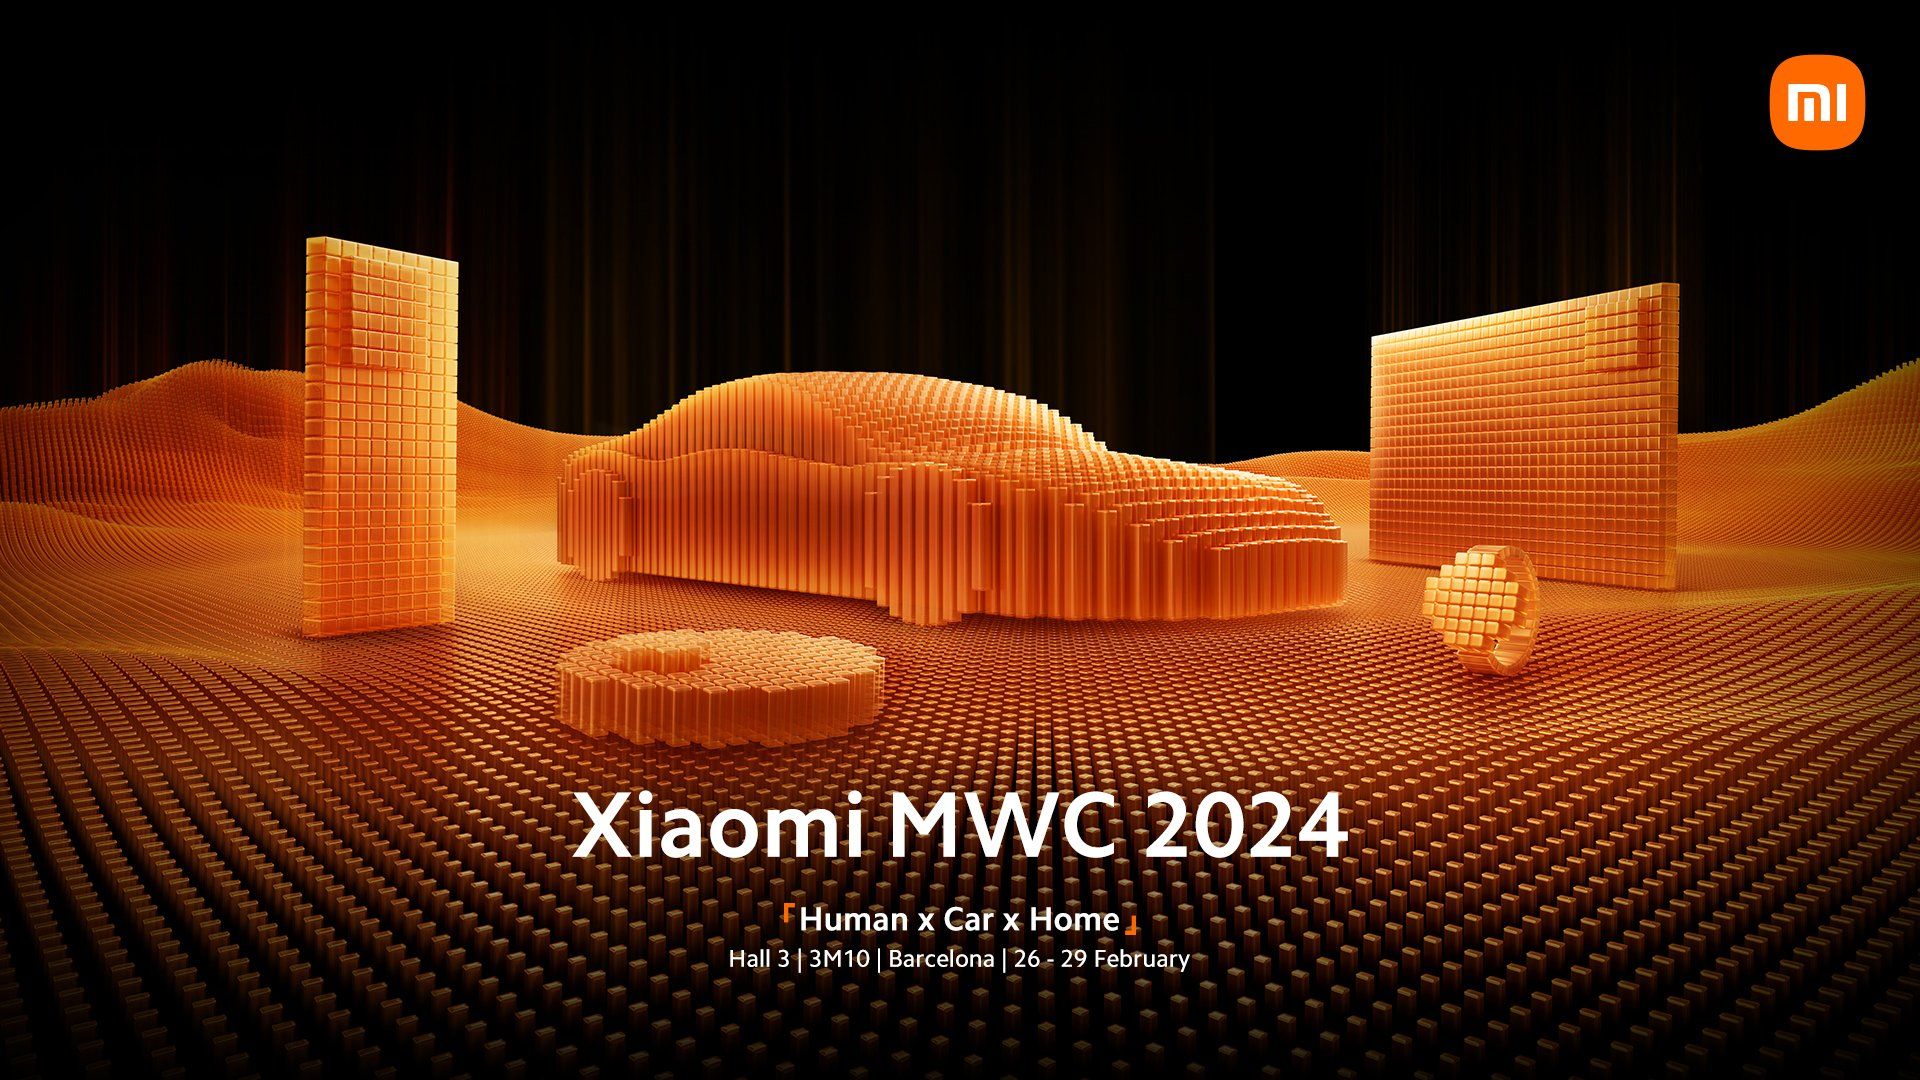 Xiaomi MWC 2024 invite